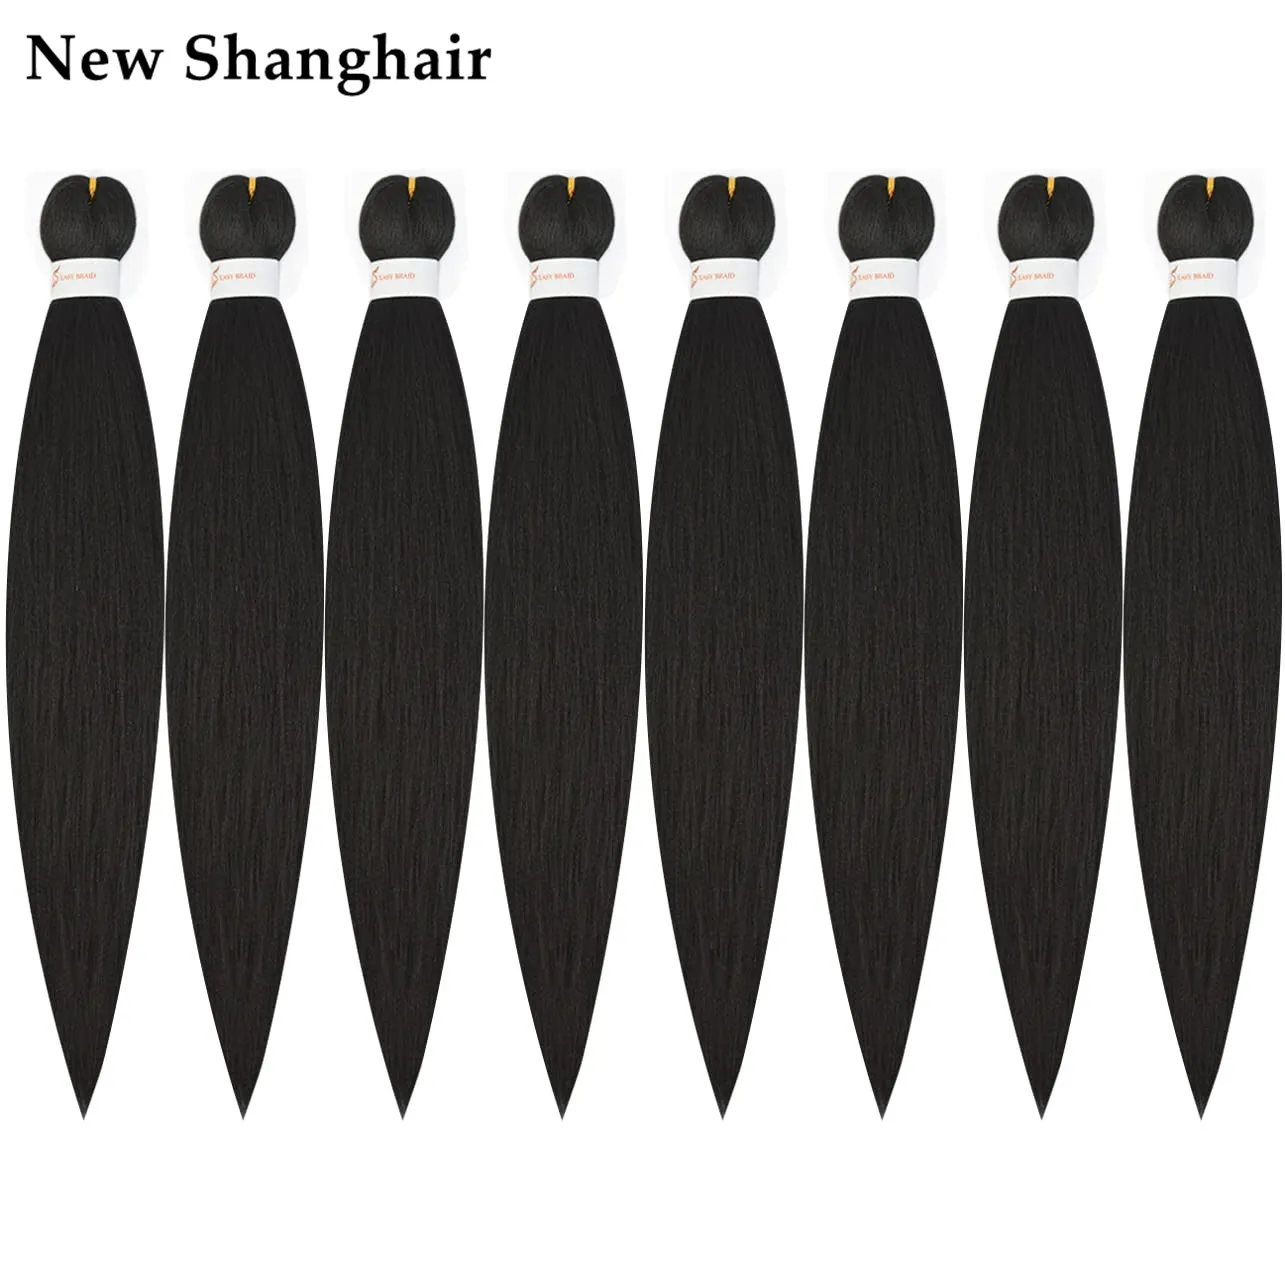 New Shanghair 26 pollici Facile intrecciare i capelli Trecce sintetiche Estensioni dei capelli 90 g / pz Trecce EZ pre allungate Twist Hair